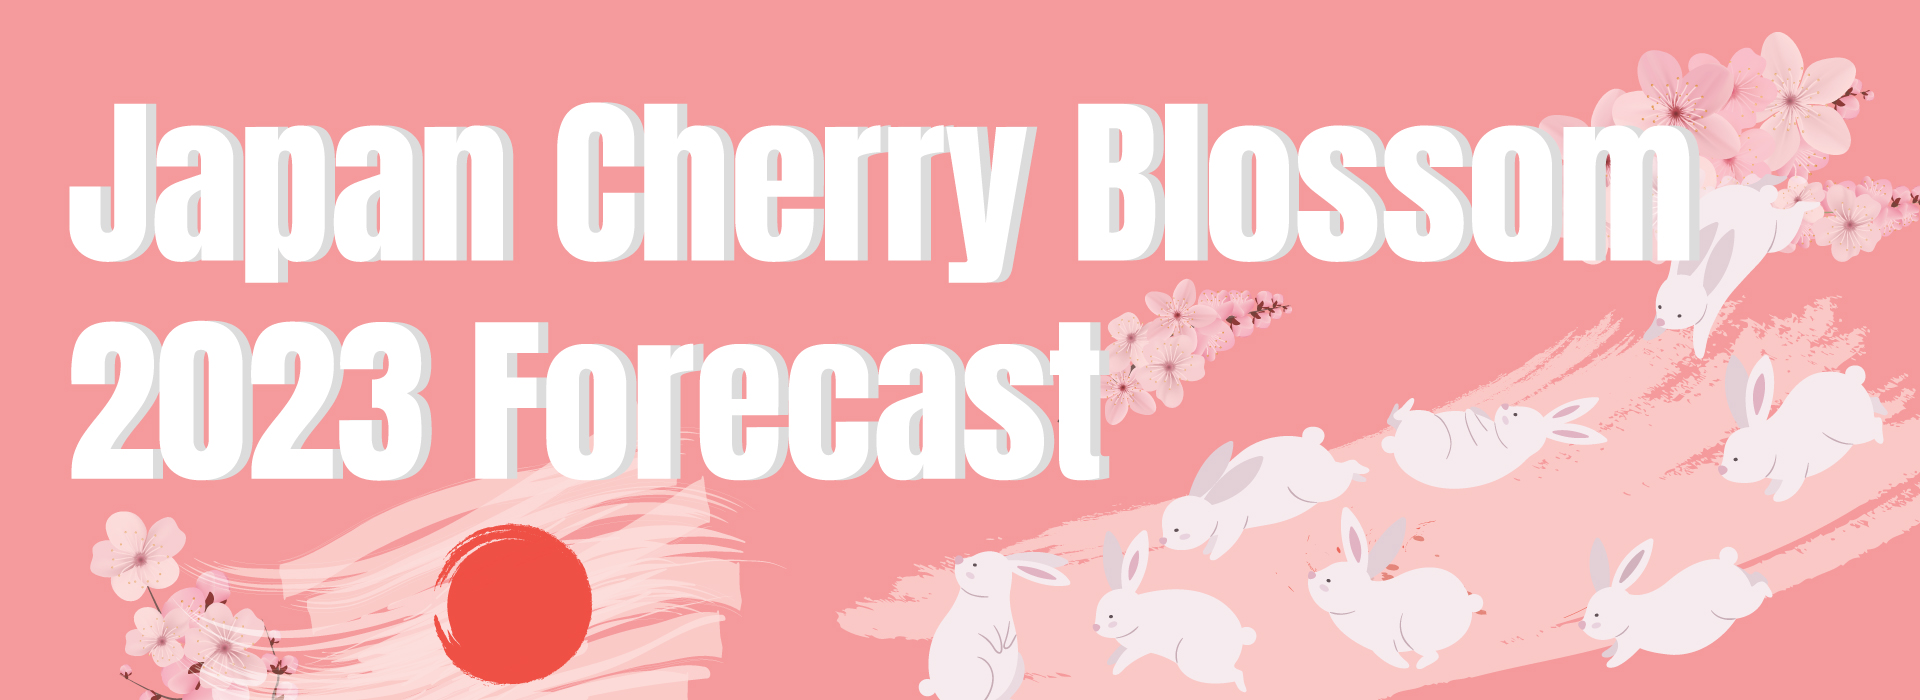 คาดการณ์ช่วงเวลาดอกซากุระบานที่ญี่ปุ่นในปี 2023 (Japan Cherry Blossom 2023 Forecast)